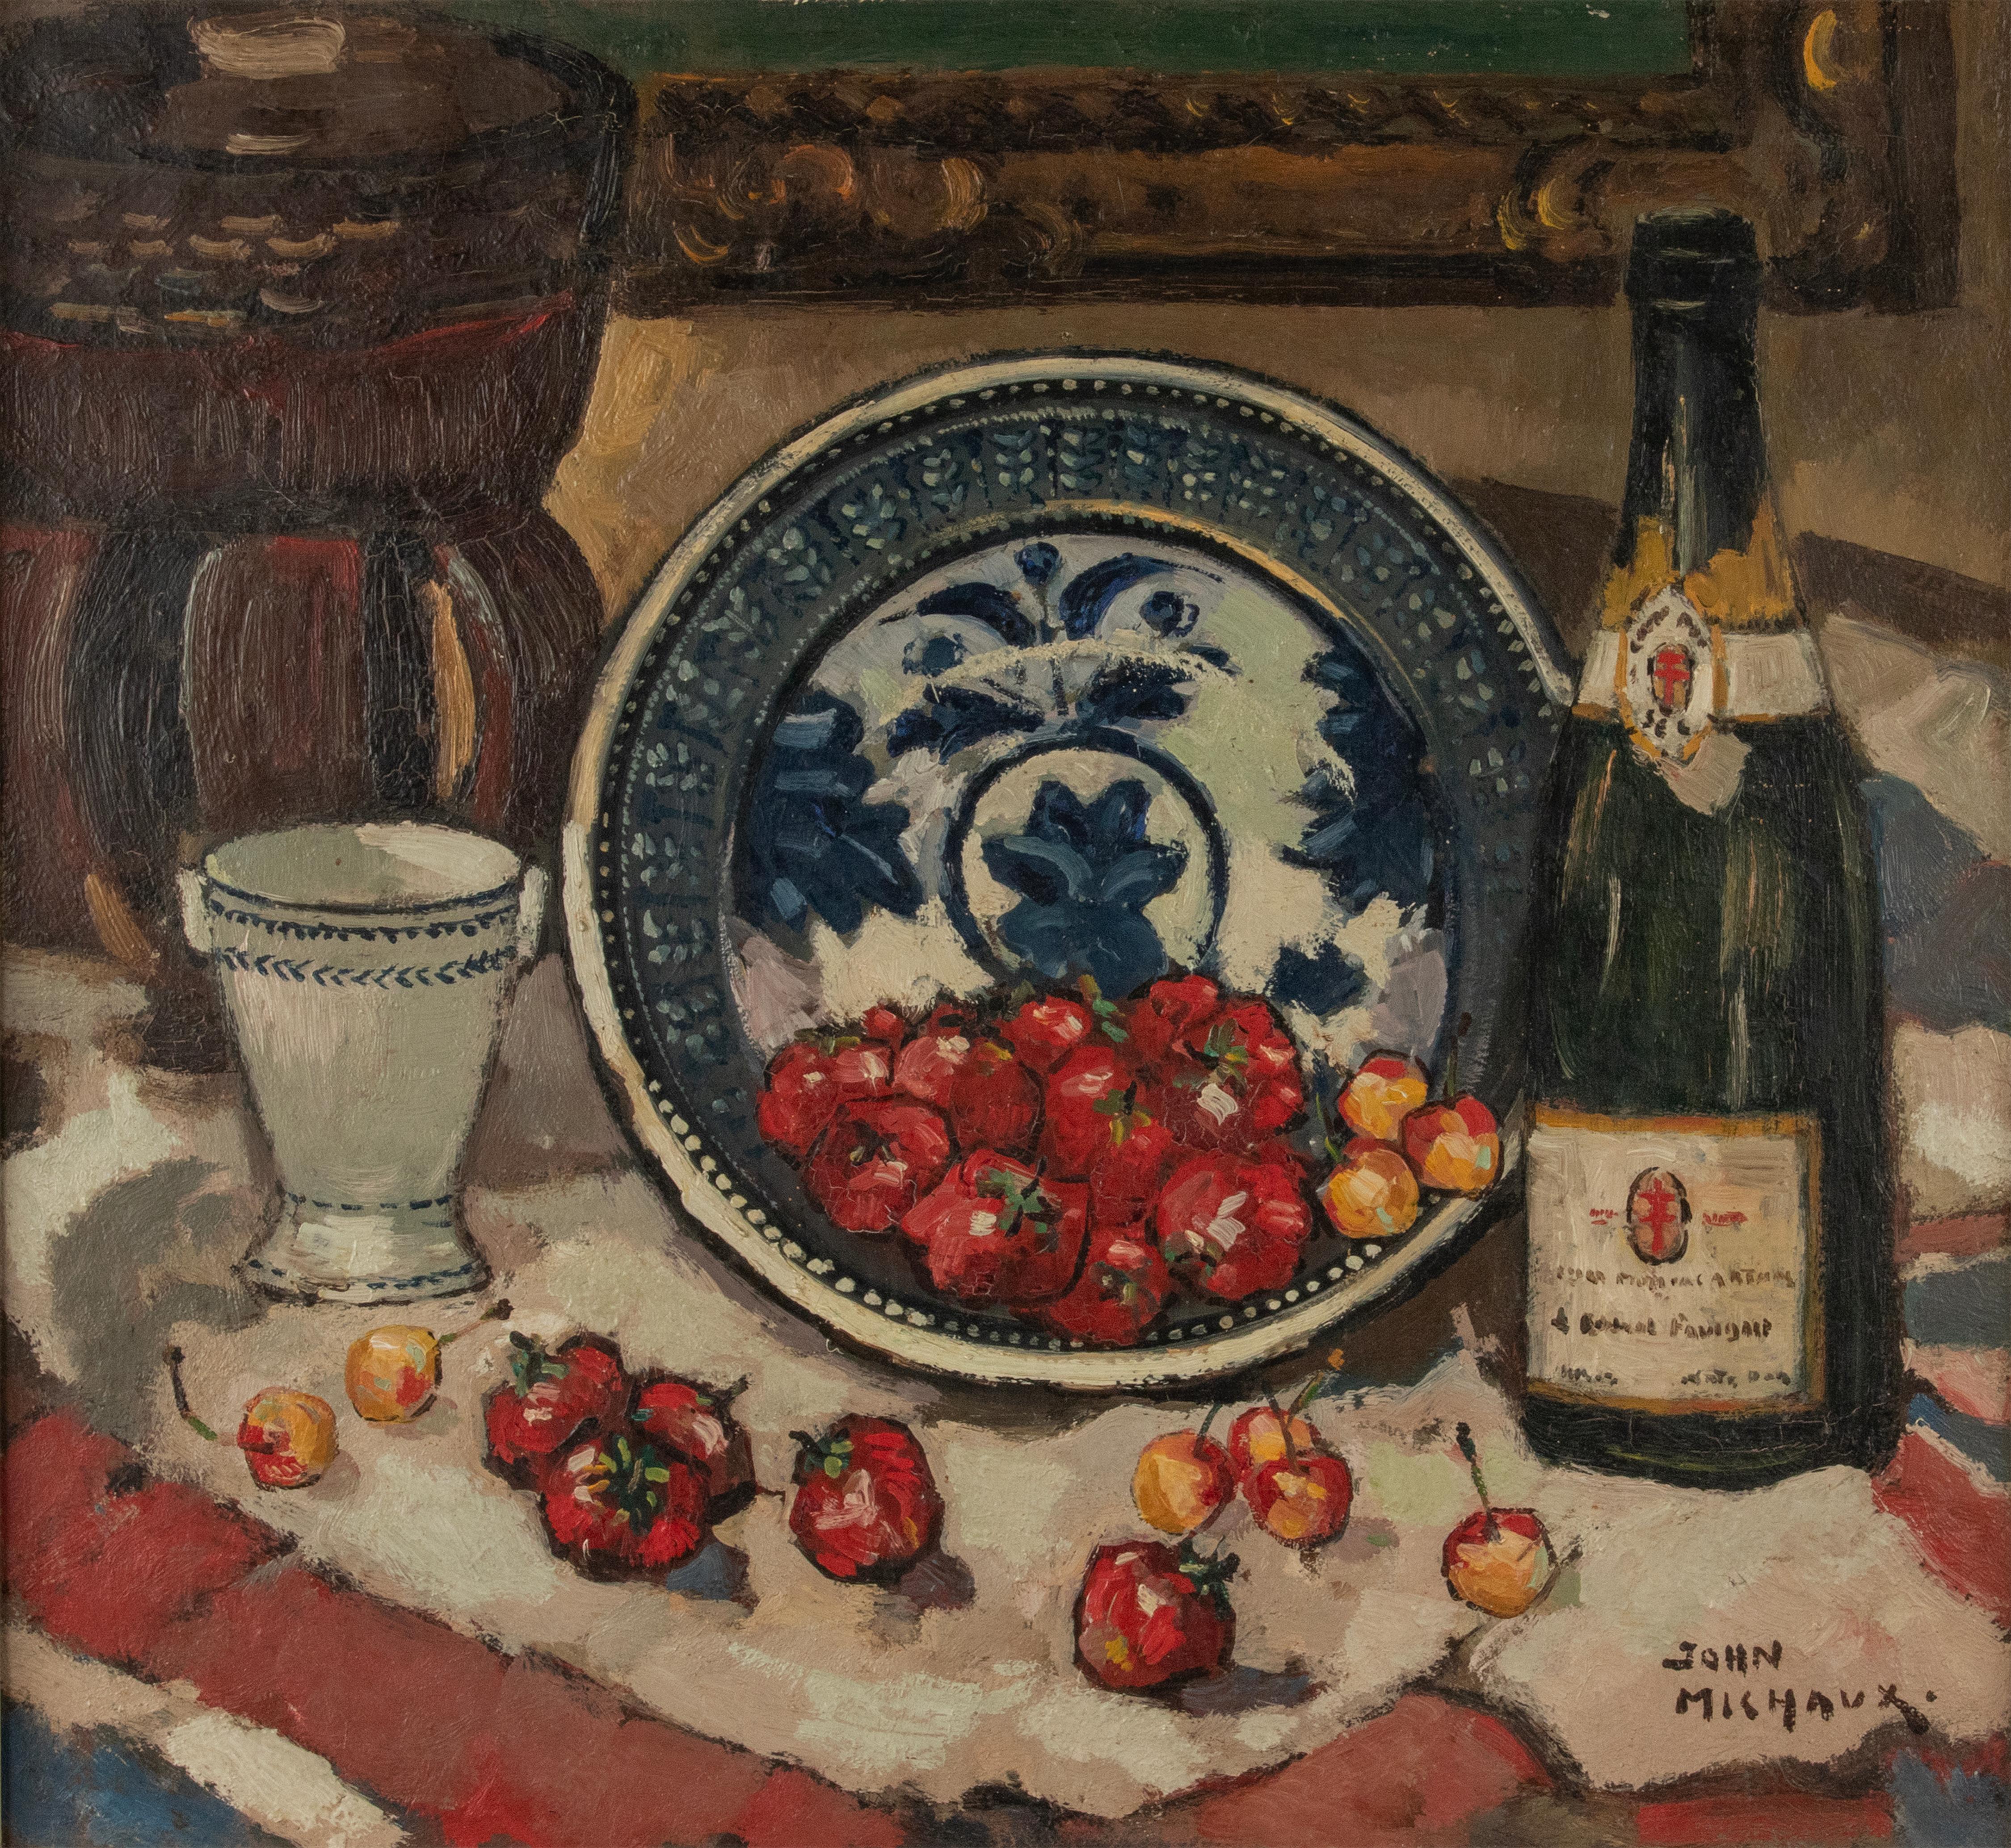 Une belle nature morte peinte à l'huile, réalisée par l'artiste belge John Michaux. 
Il s'agit d'une scène colorée avec des fraises et des cerises dans un bol en céramique bleu et blanc et une bouteille de champagne, sur fond d'intérieur de maison.